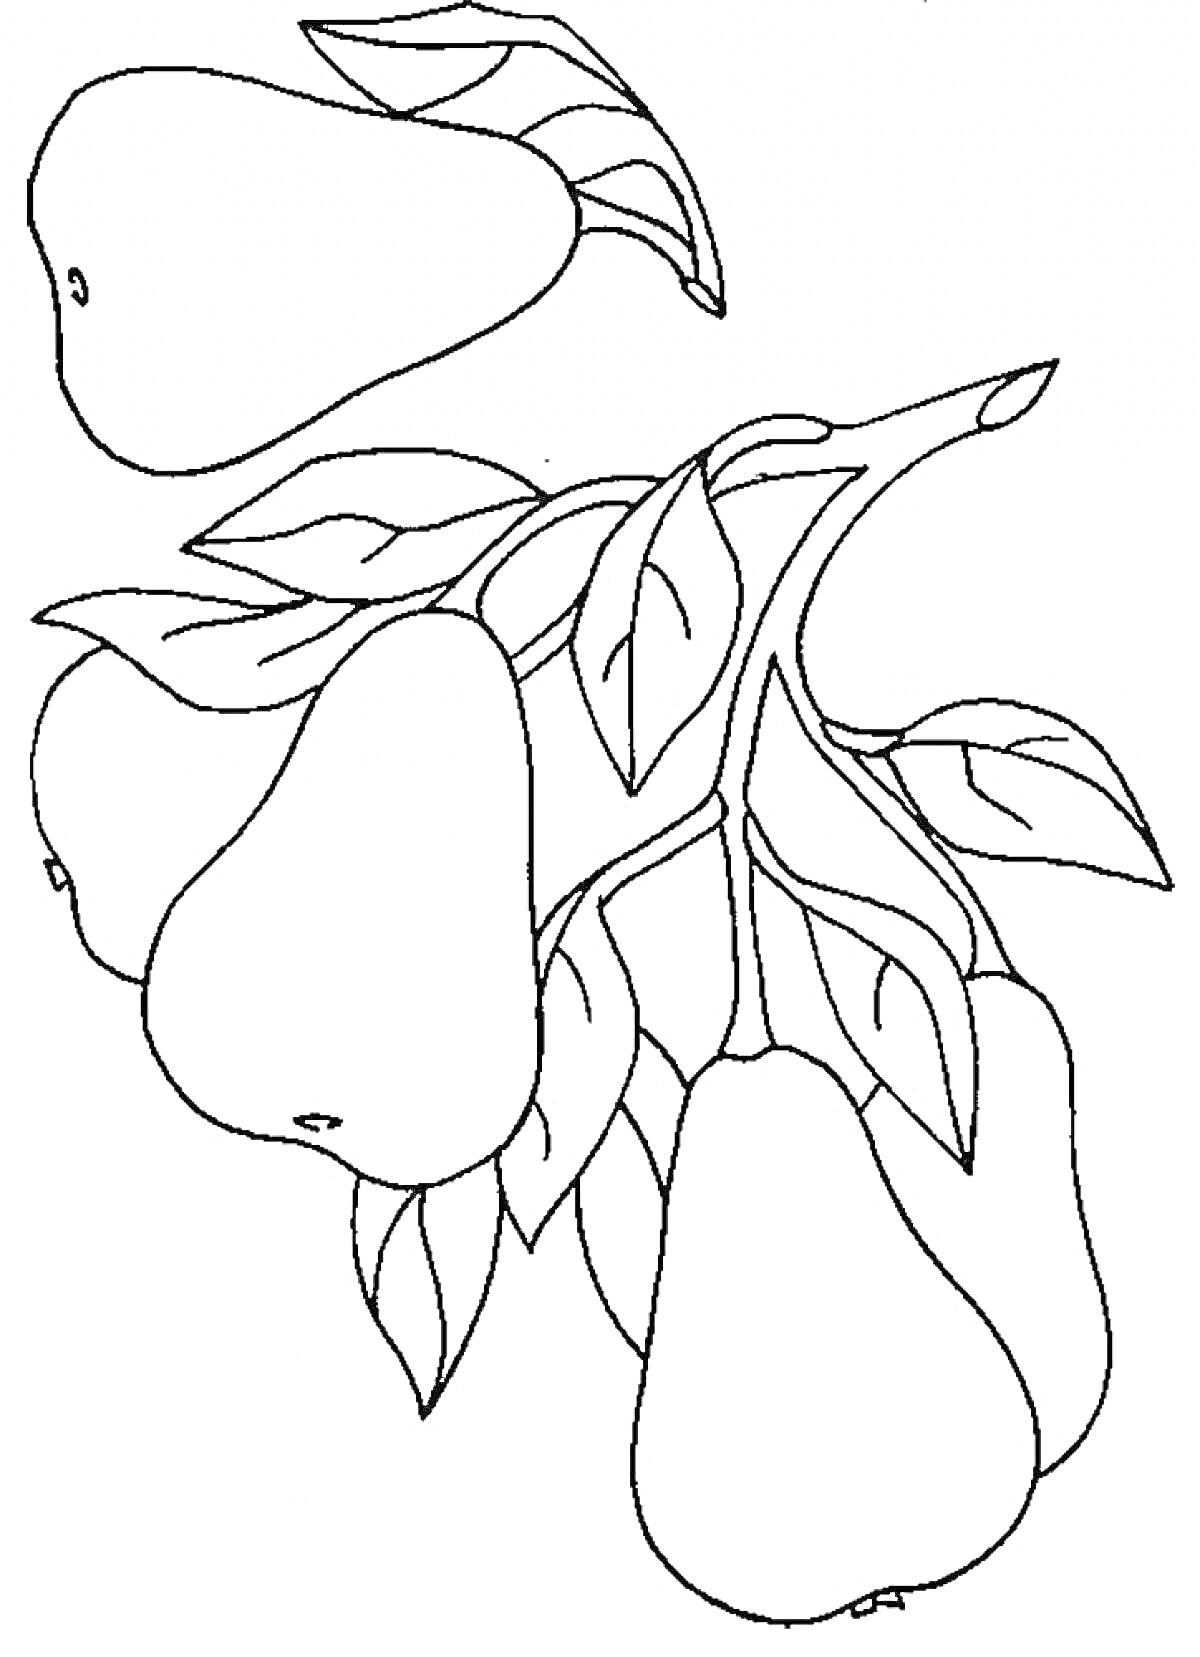 Раскраска Груши на ветке с листьями